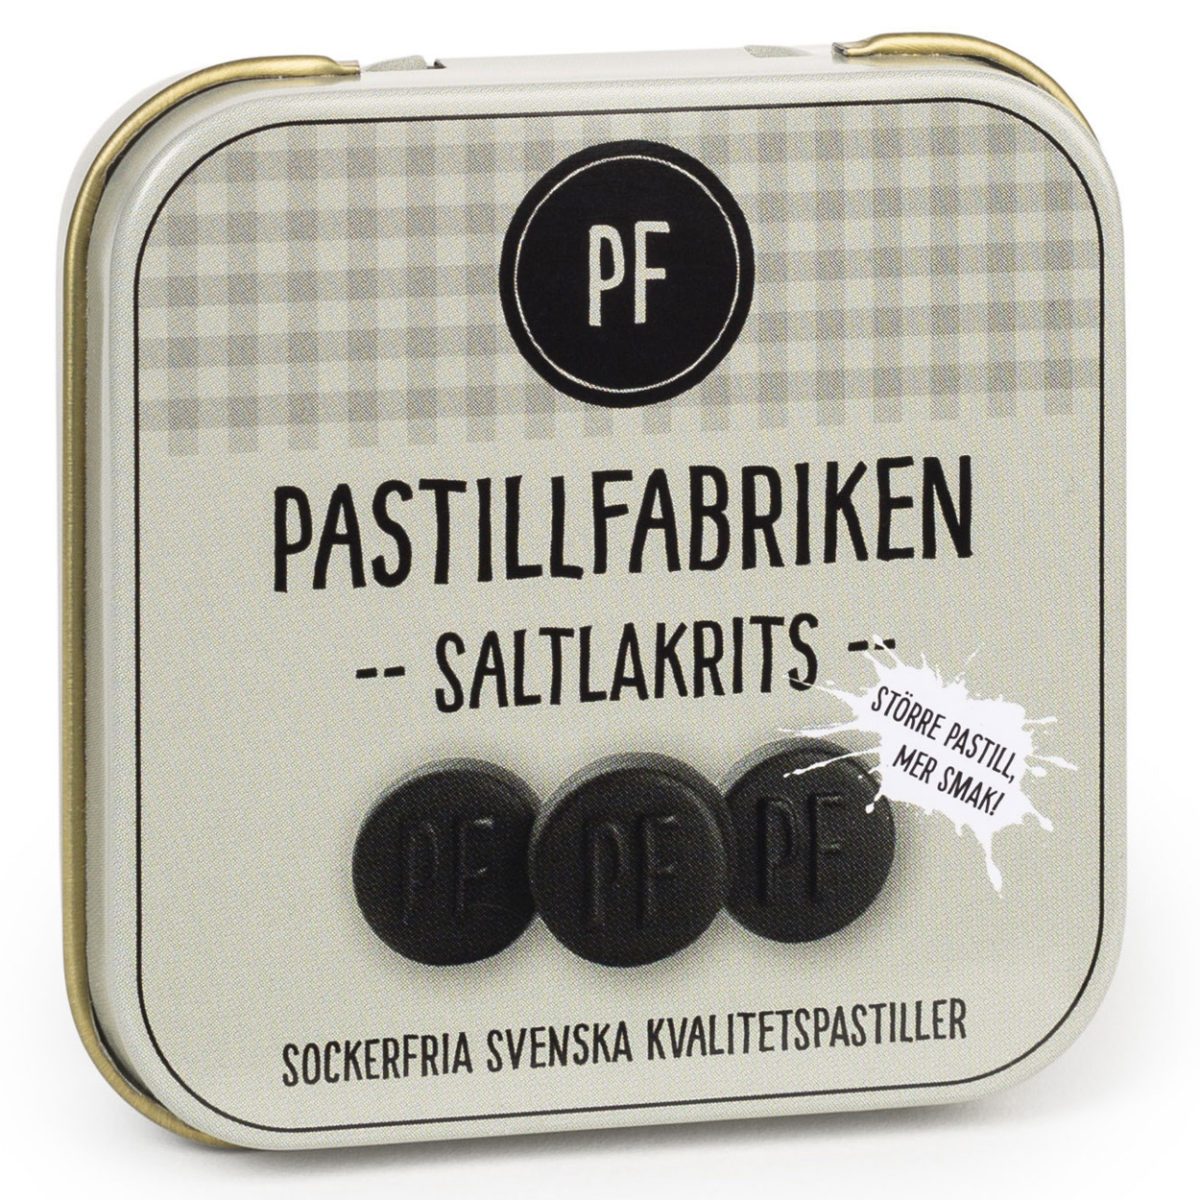 Pastillfabriken Saltlakrits (25g) 1